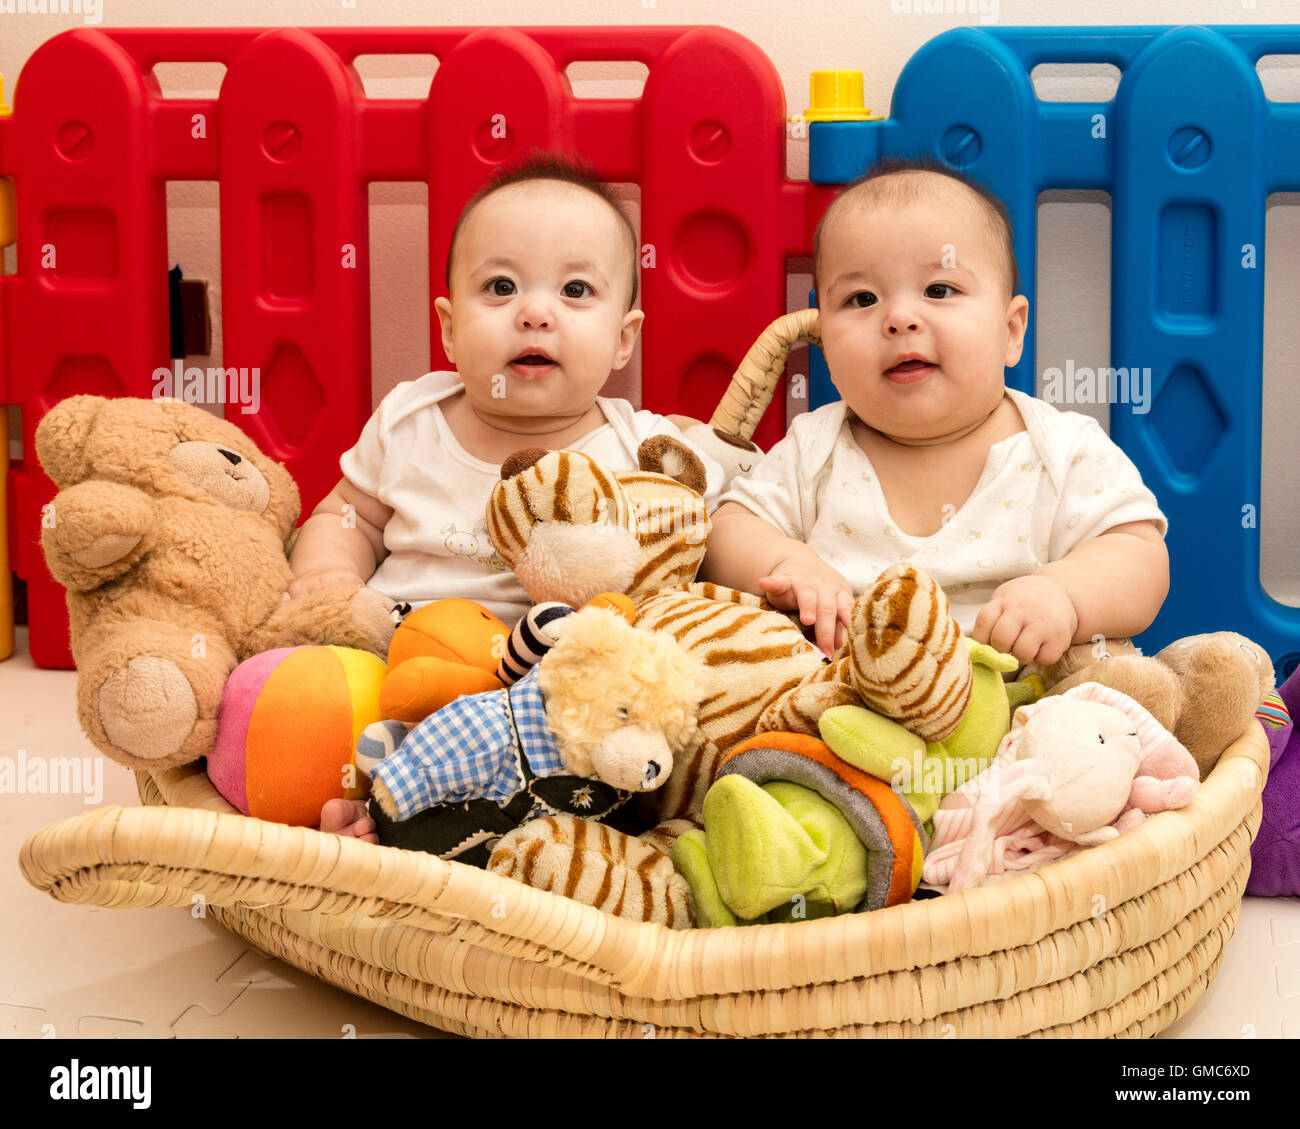 Dos bebés gemelos felices en el canasto de los juguetes en el corralito Foto de stock